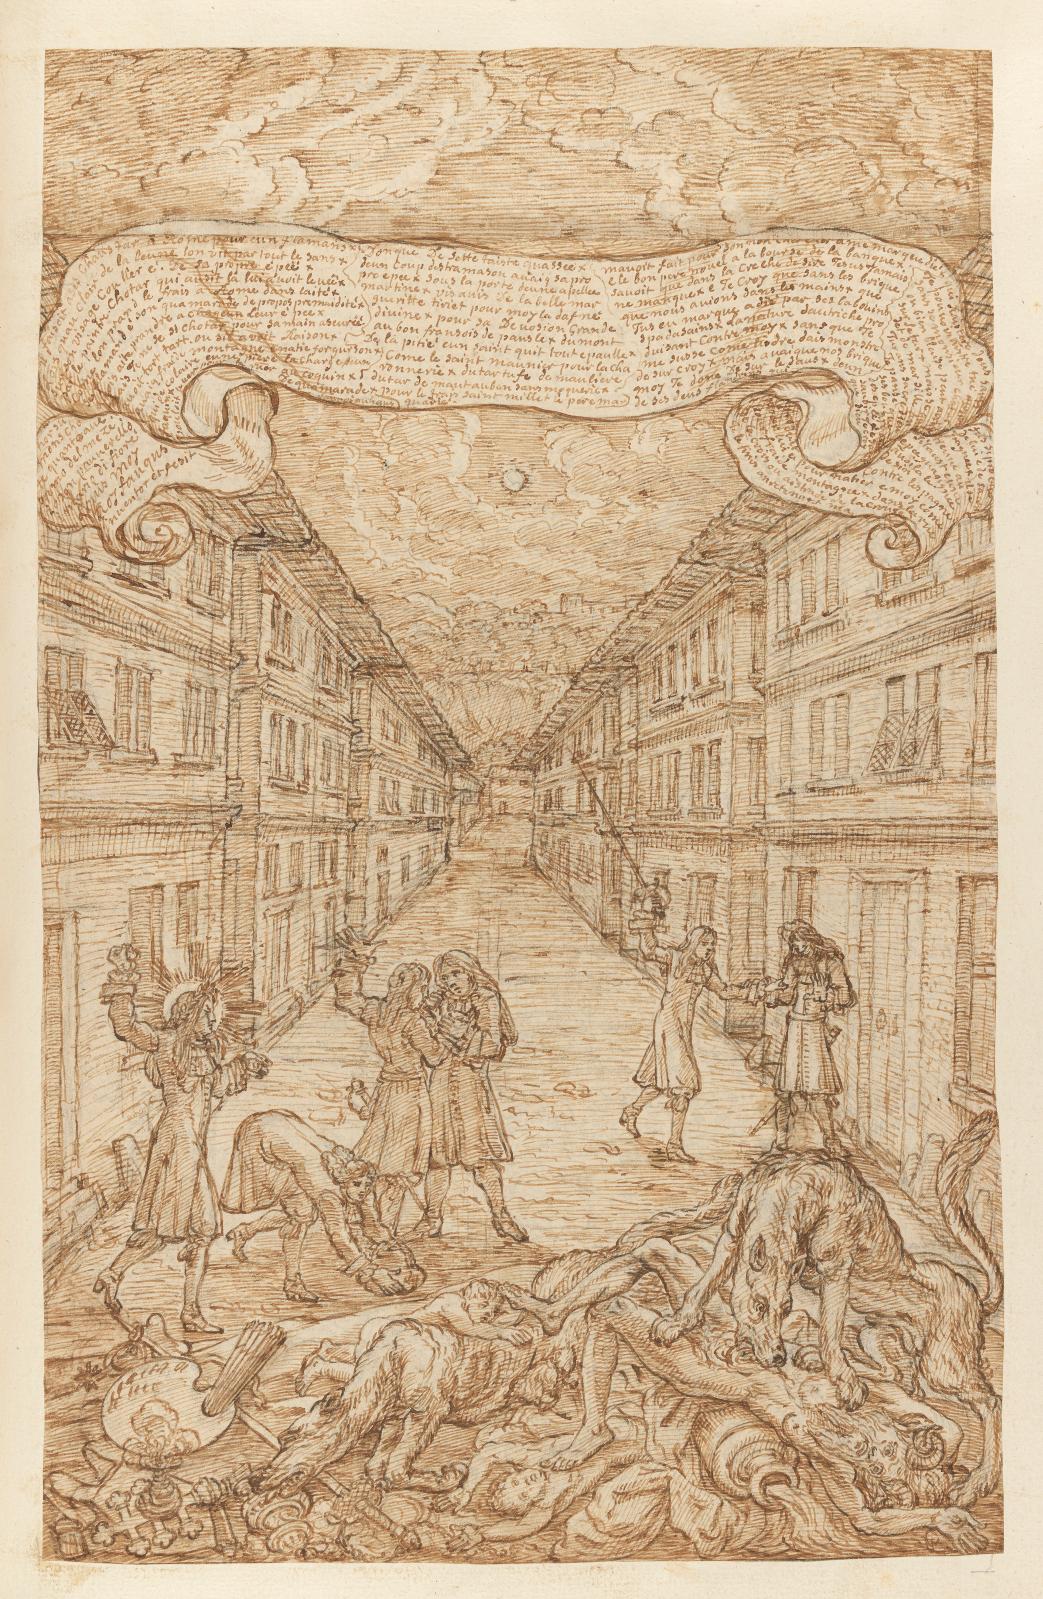 L’atelier de Le Brun, plume et encre brune, bande de papier ajoutée en partie supérieure, 35,5 x 30 cm, Recueil de desseins ridicules par le nommé Foq